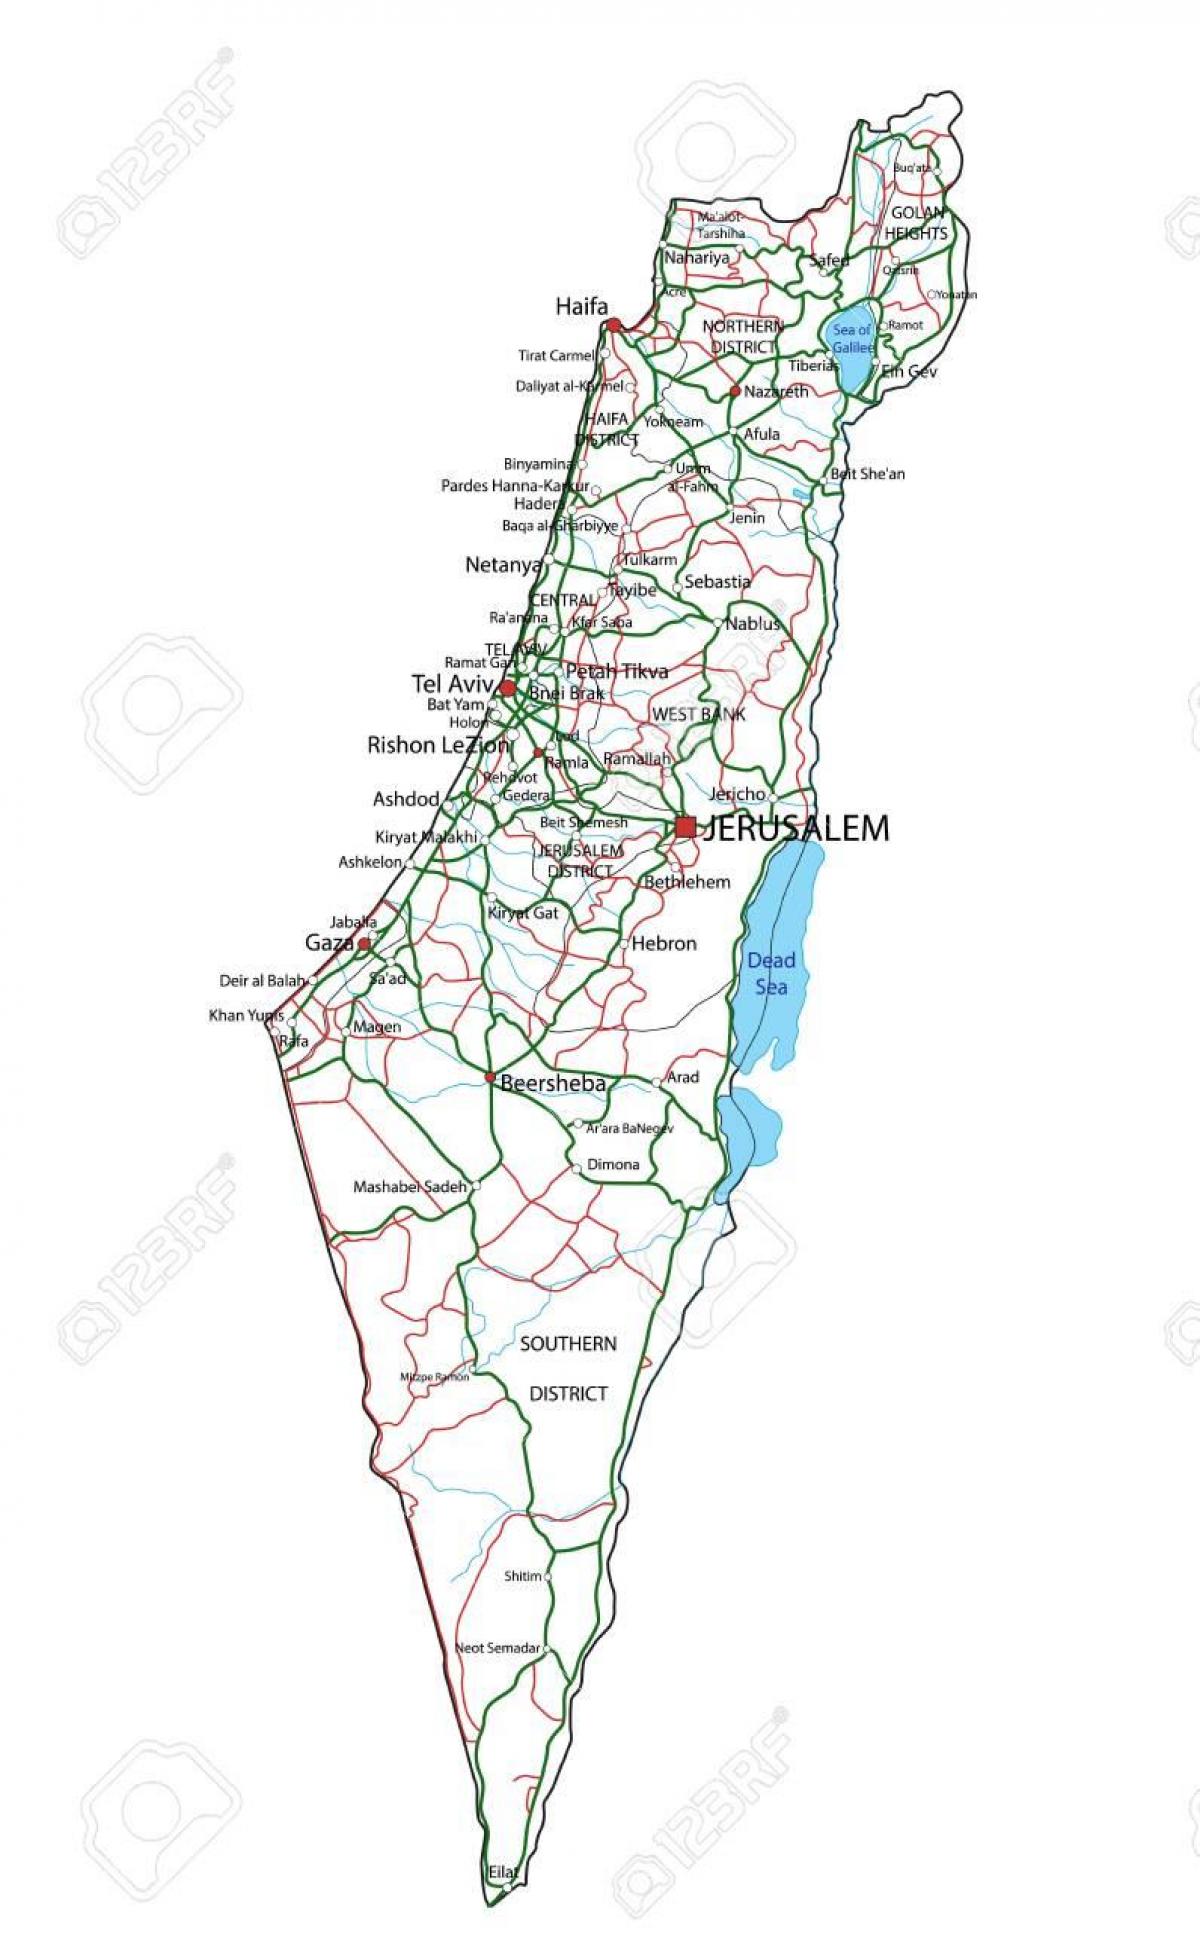 Motorway map of Israel